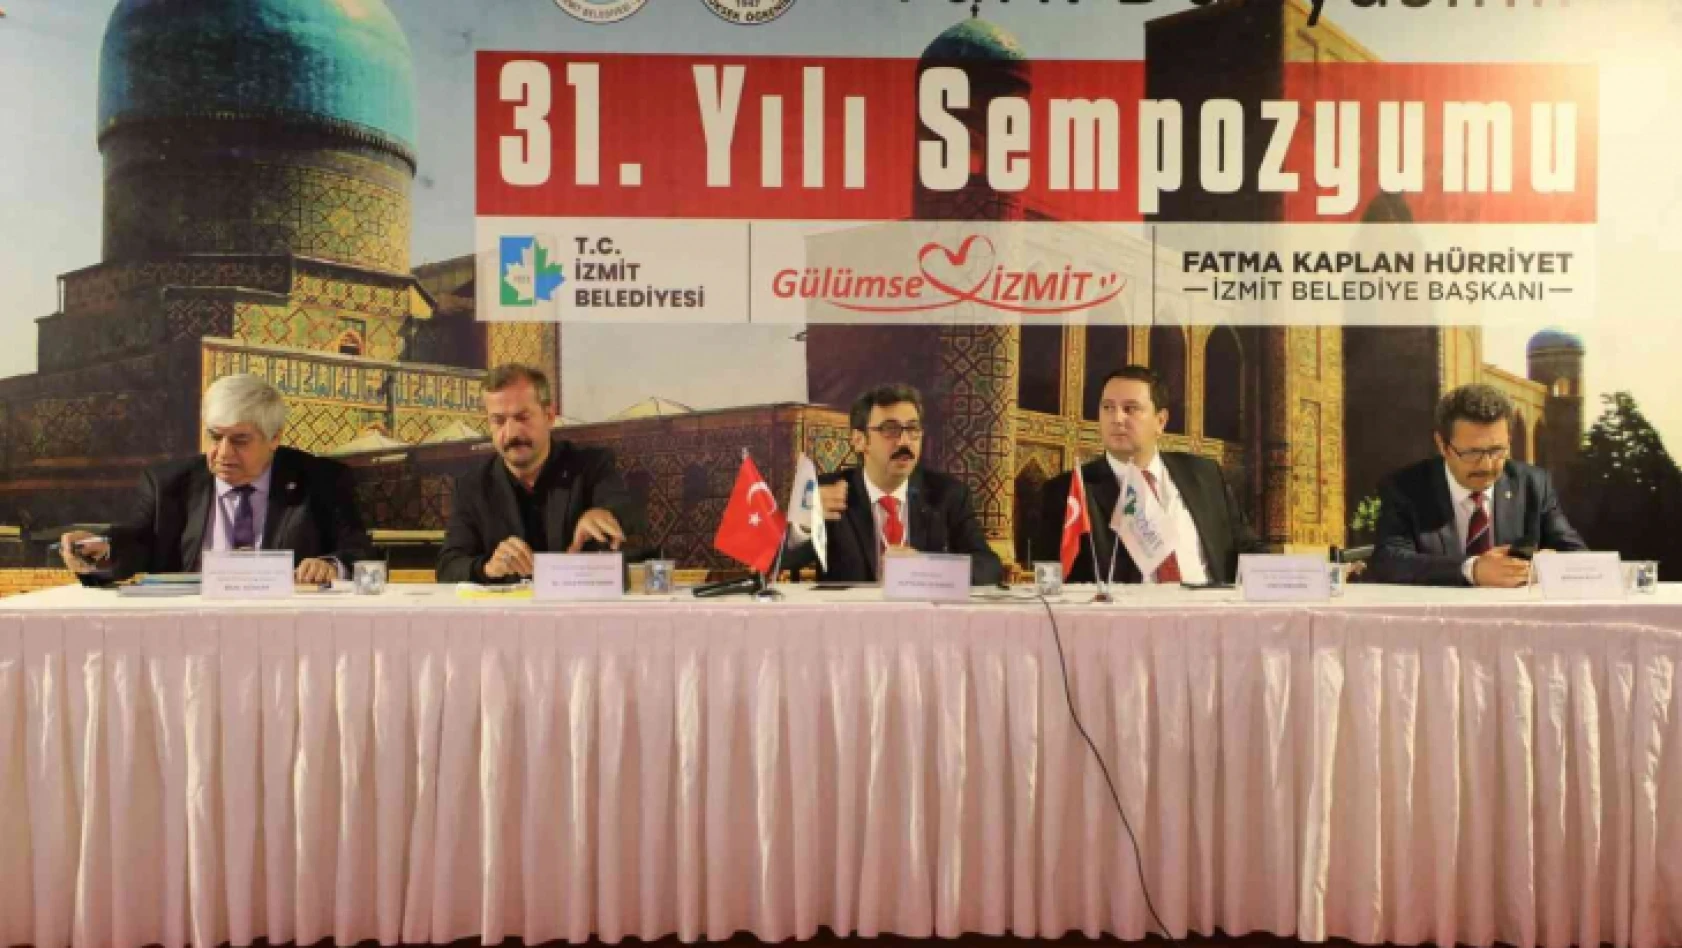 'Türk Dünyasının 31. Yılı Sempozyumu' başladı